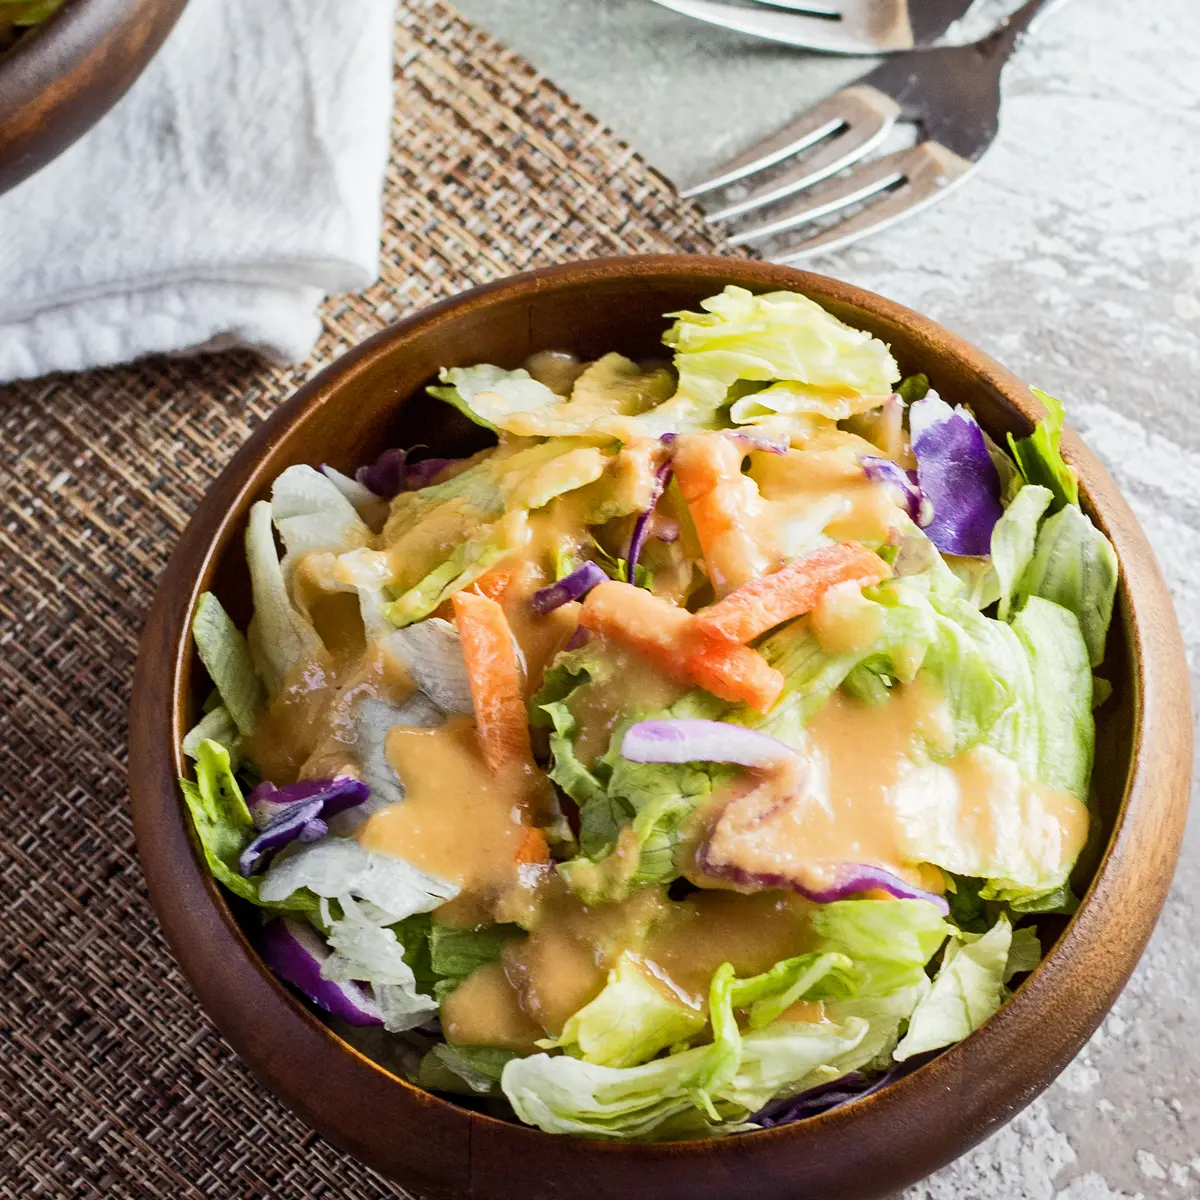 Grande image carrée de la vinaigrette au gingembre benihana servie sur une salade dans un bol en bambou foncé avec un fond texturé clair.